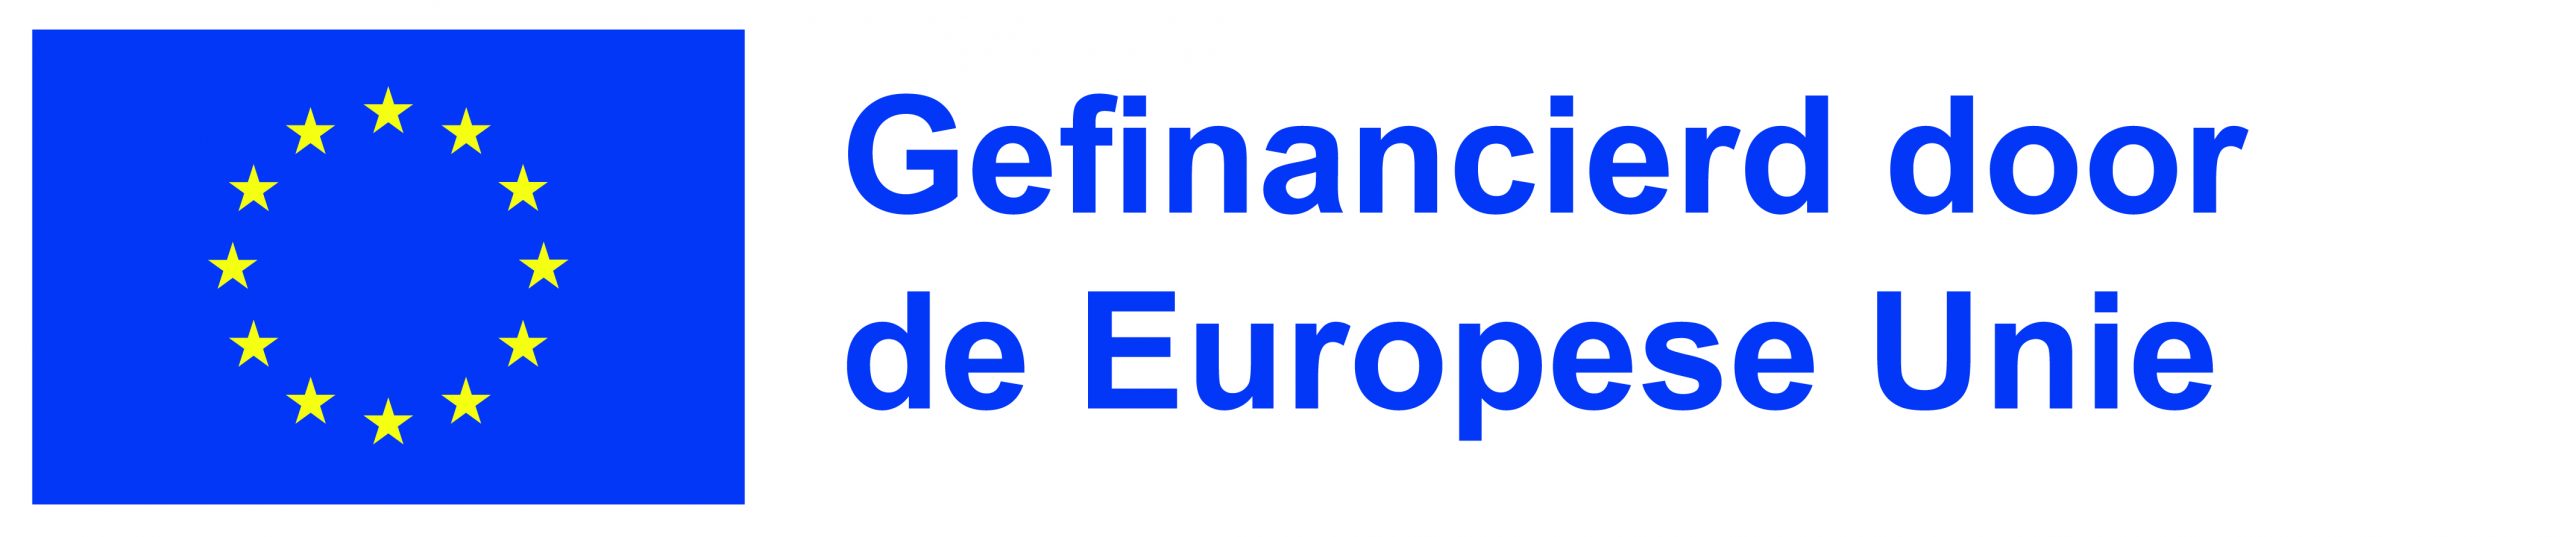 NL Gefinancierd door de Europese Unie_POS